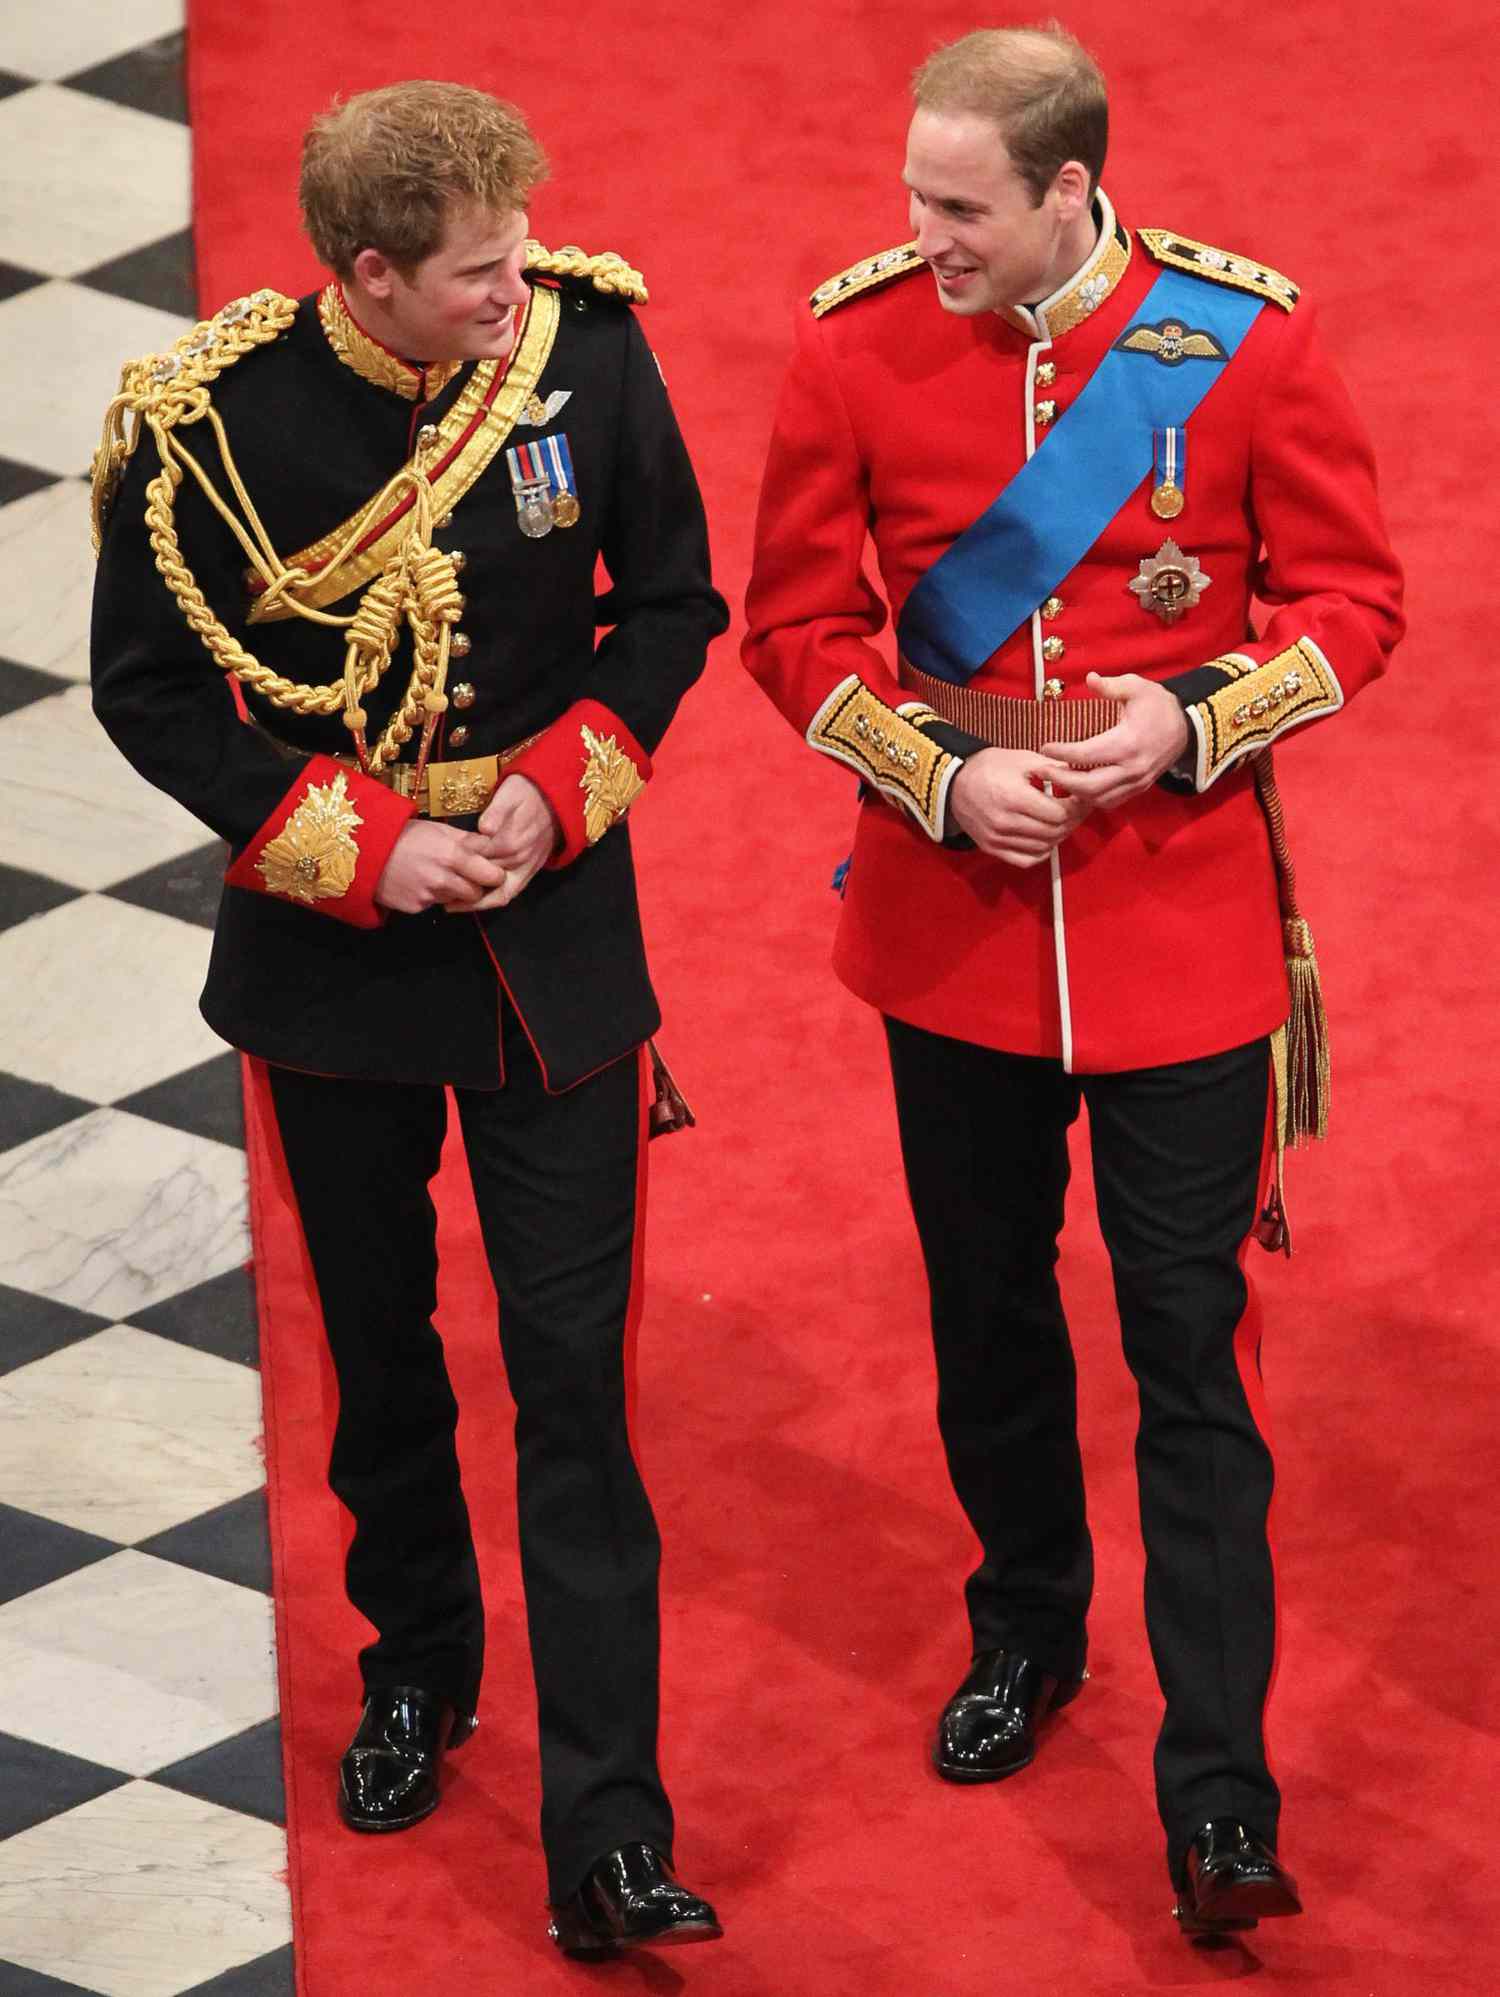 Prinz William machte in seiner Hochzeitsrede einen Witz über Prinz Harry, den er für "urkomisch" hielt.